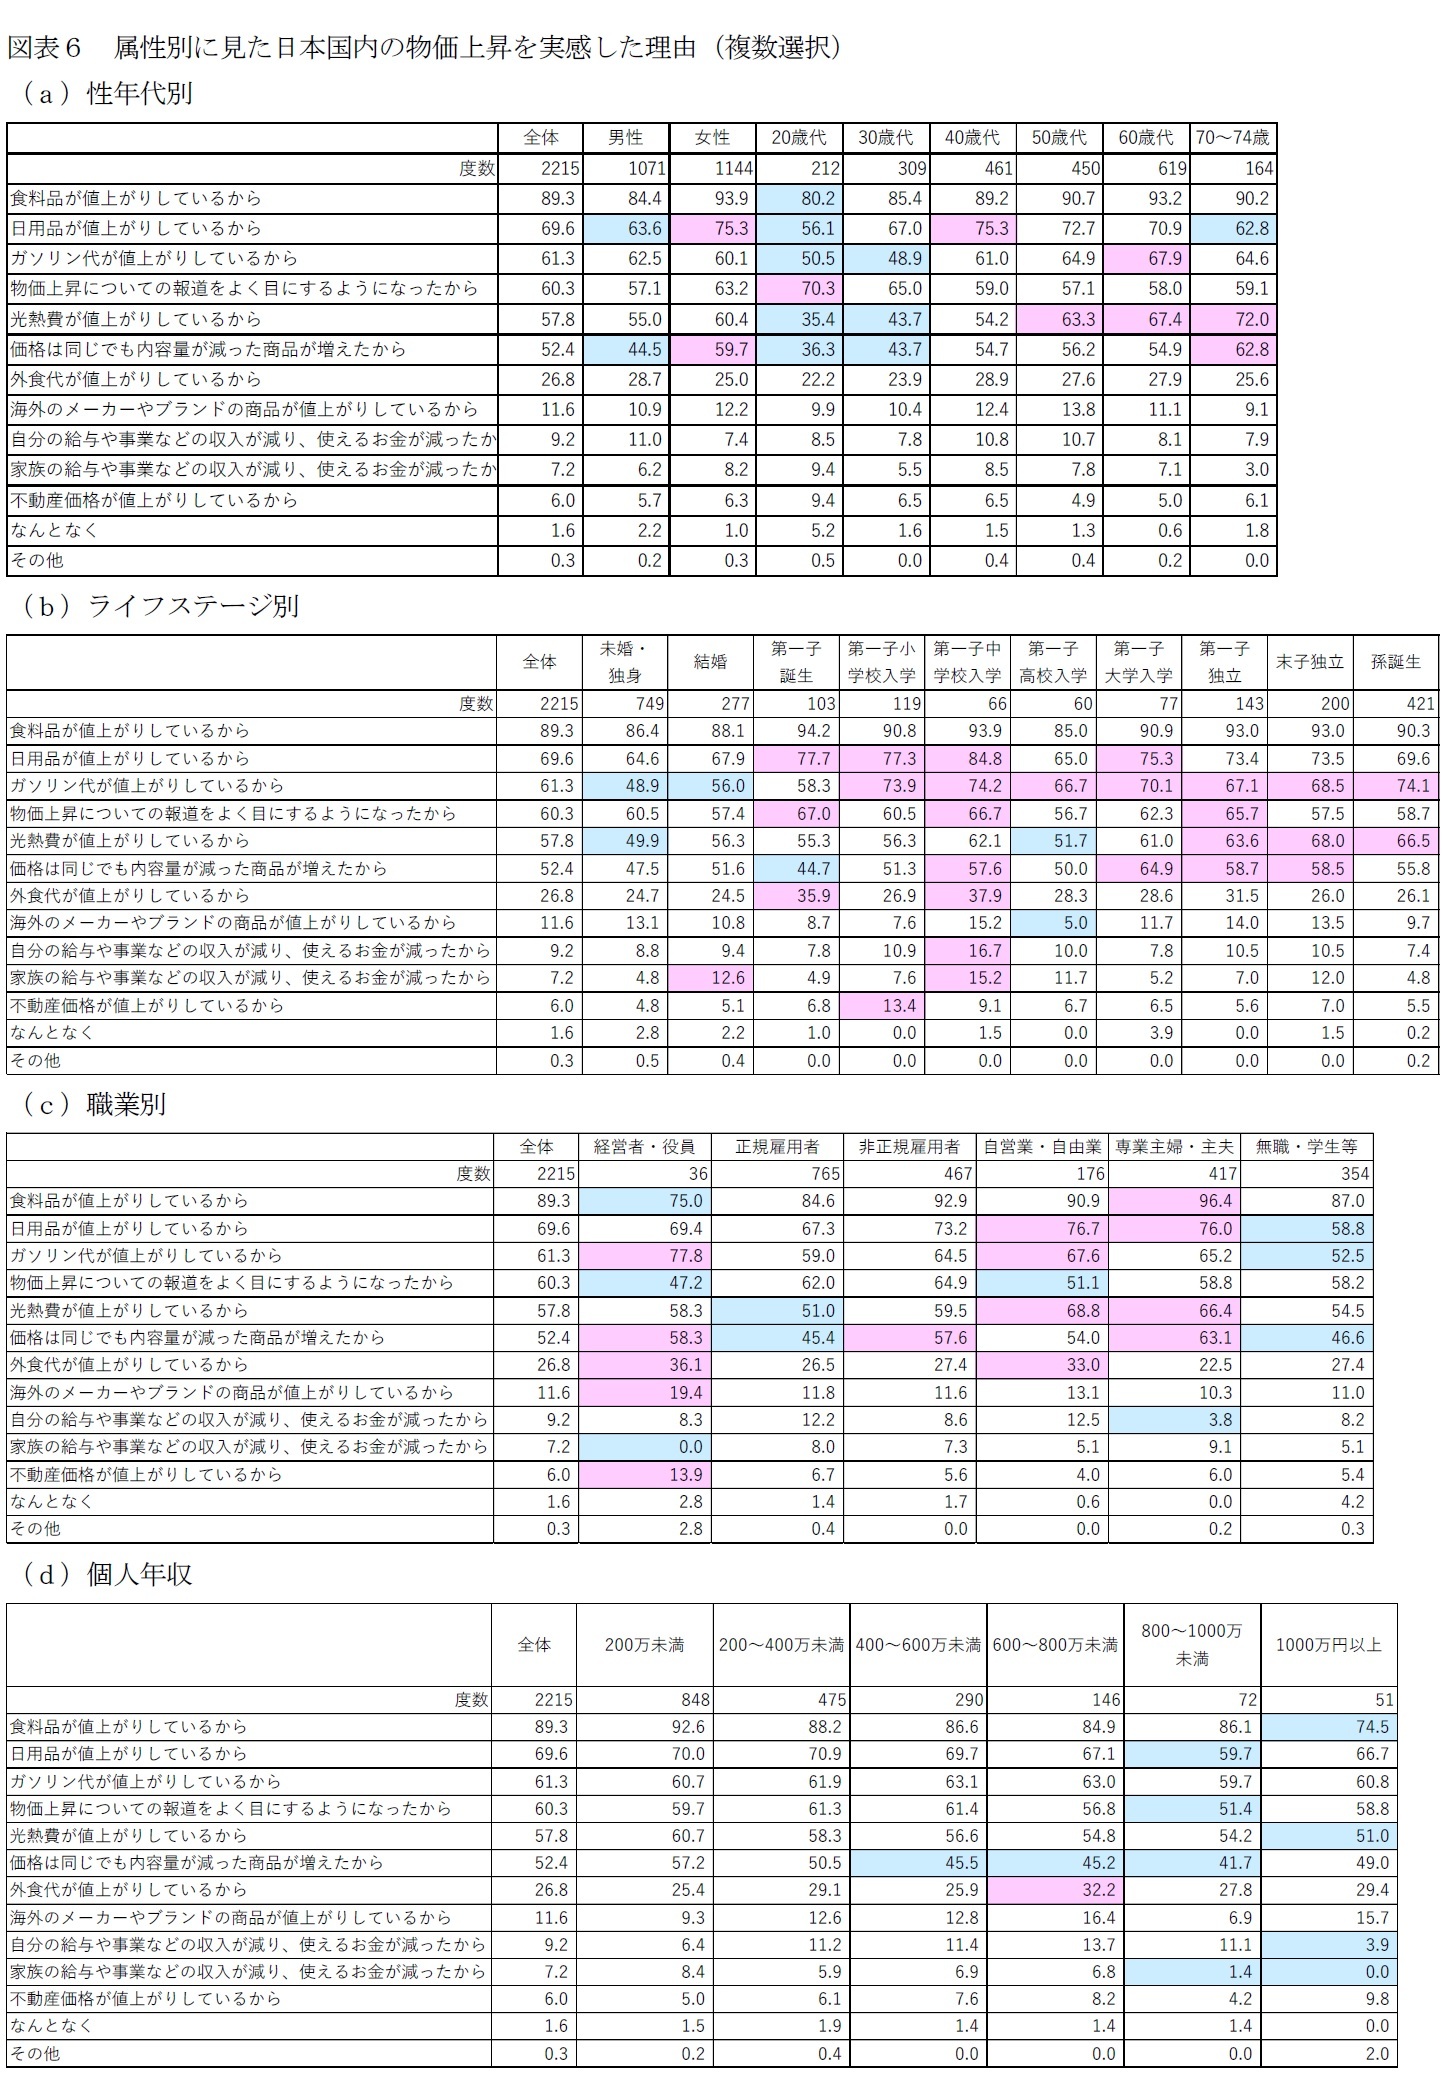 図表６－１　属性別に見た日本国内の物価上昇を実感した理由（複数選択）